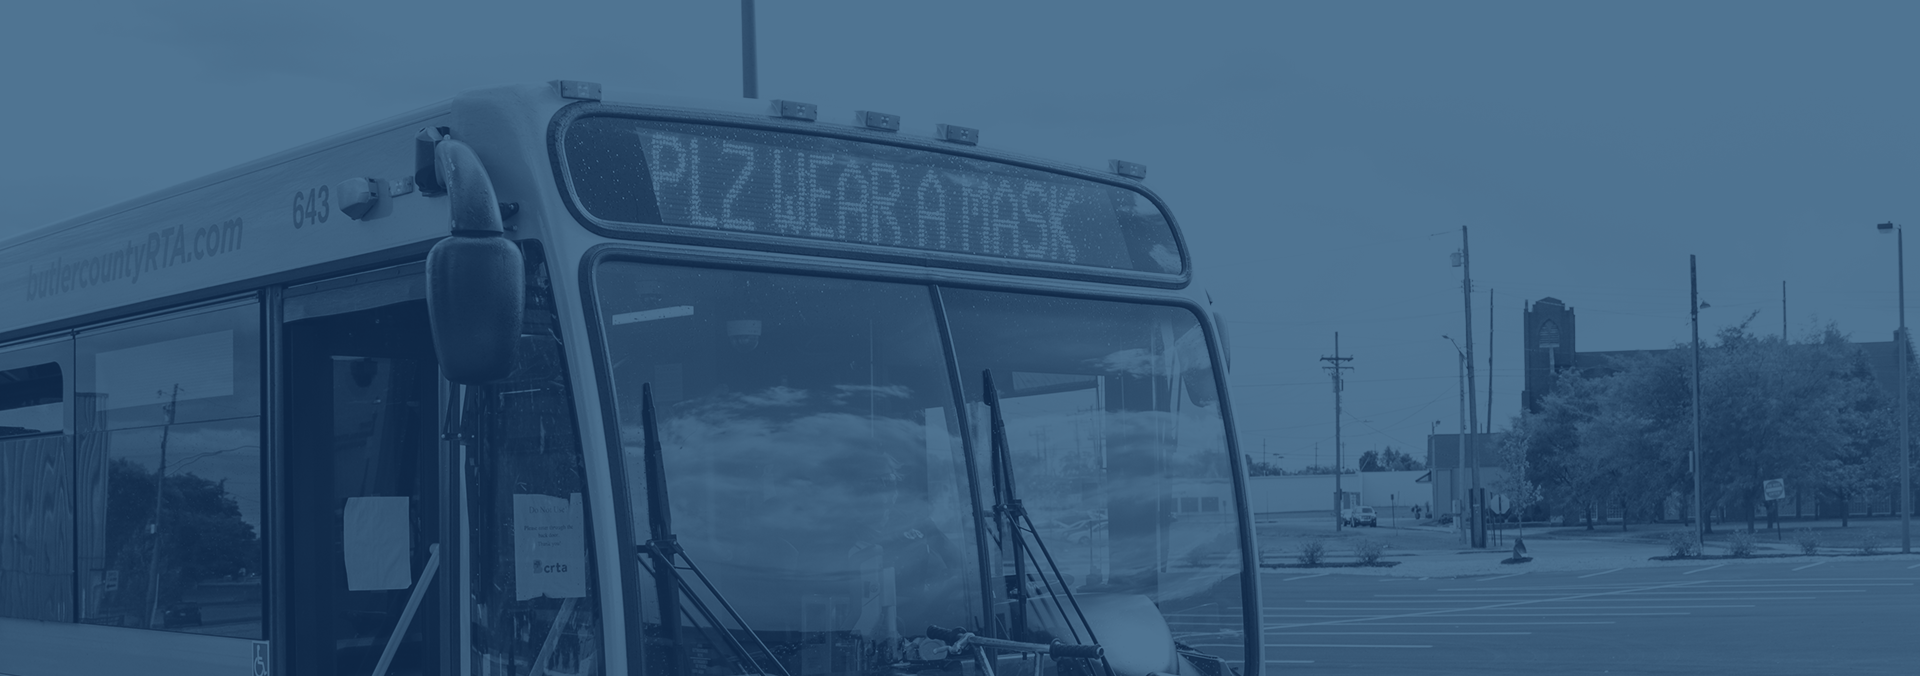 PLZ Wear a mask bus sign